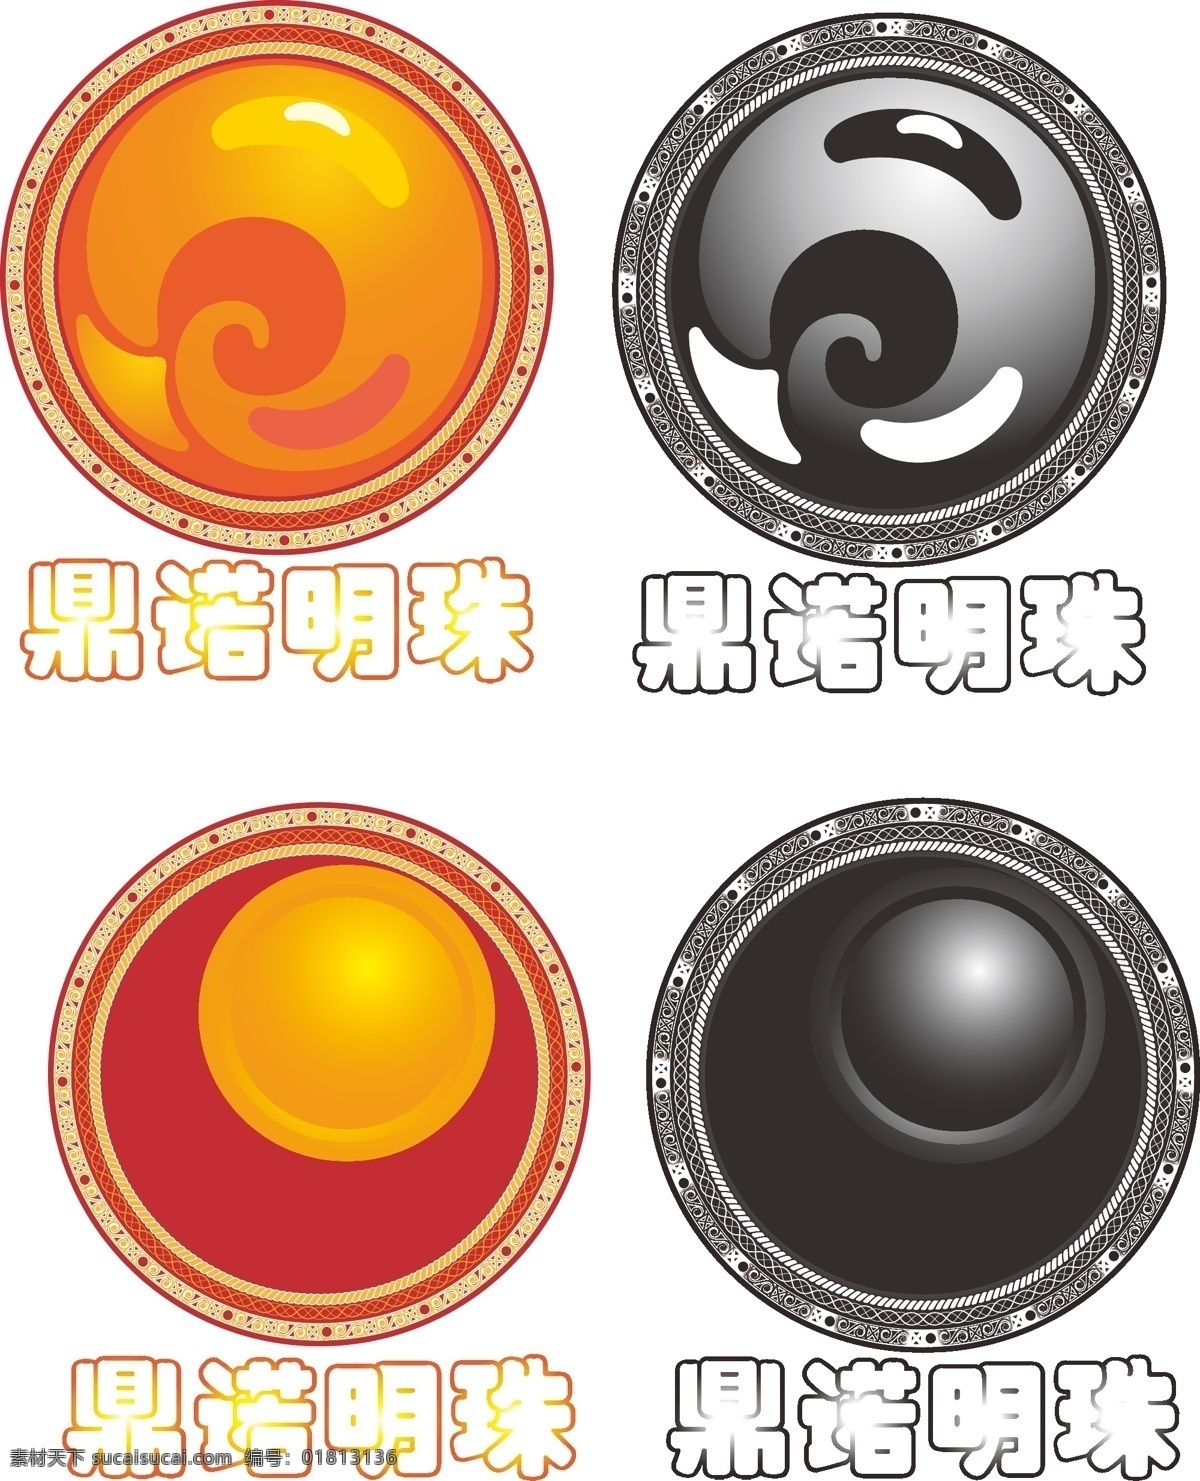 鼎 诺 明珠 logo logo设计 渐变 圆形 红色系 黑白反色 矢量图